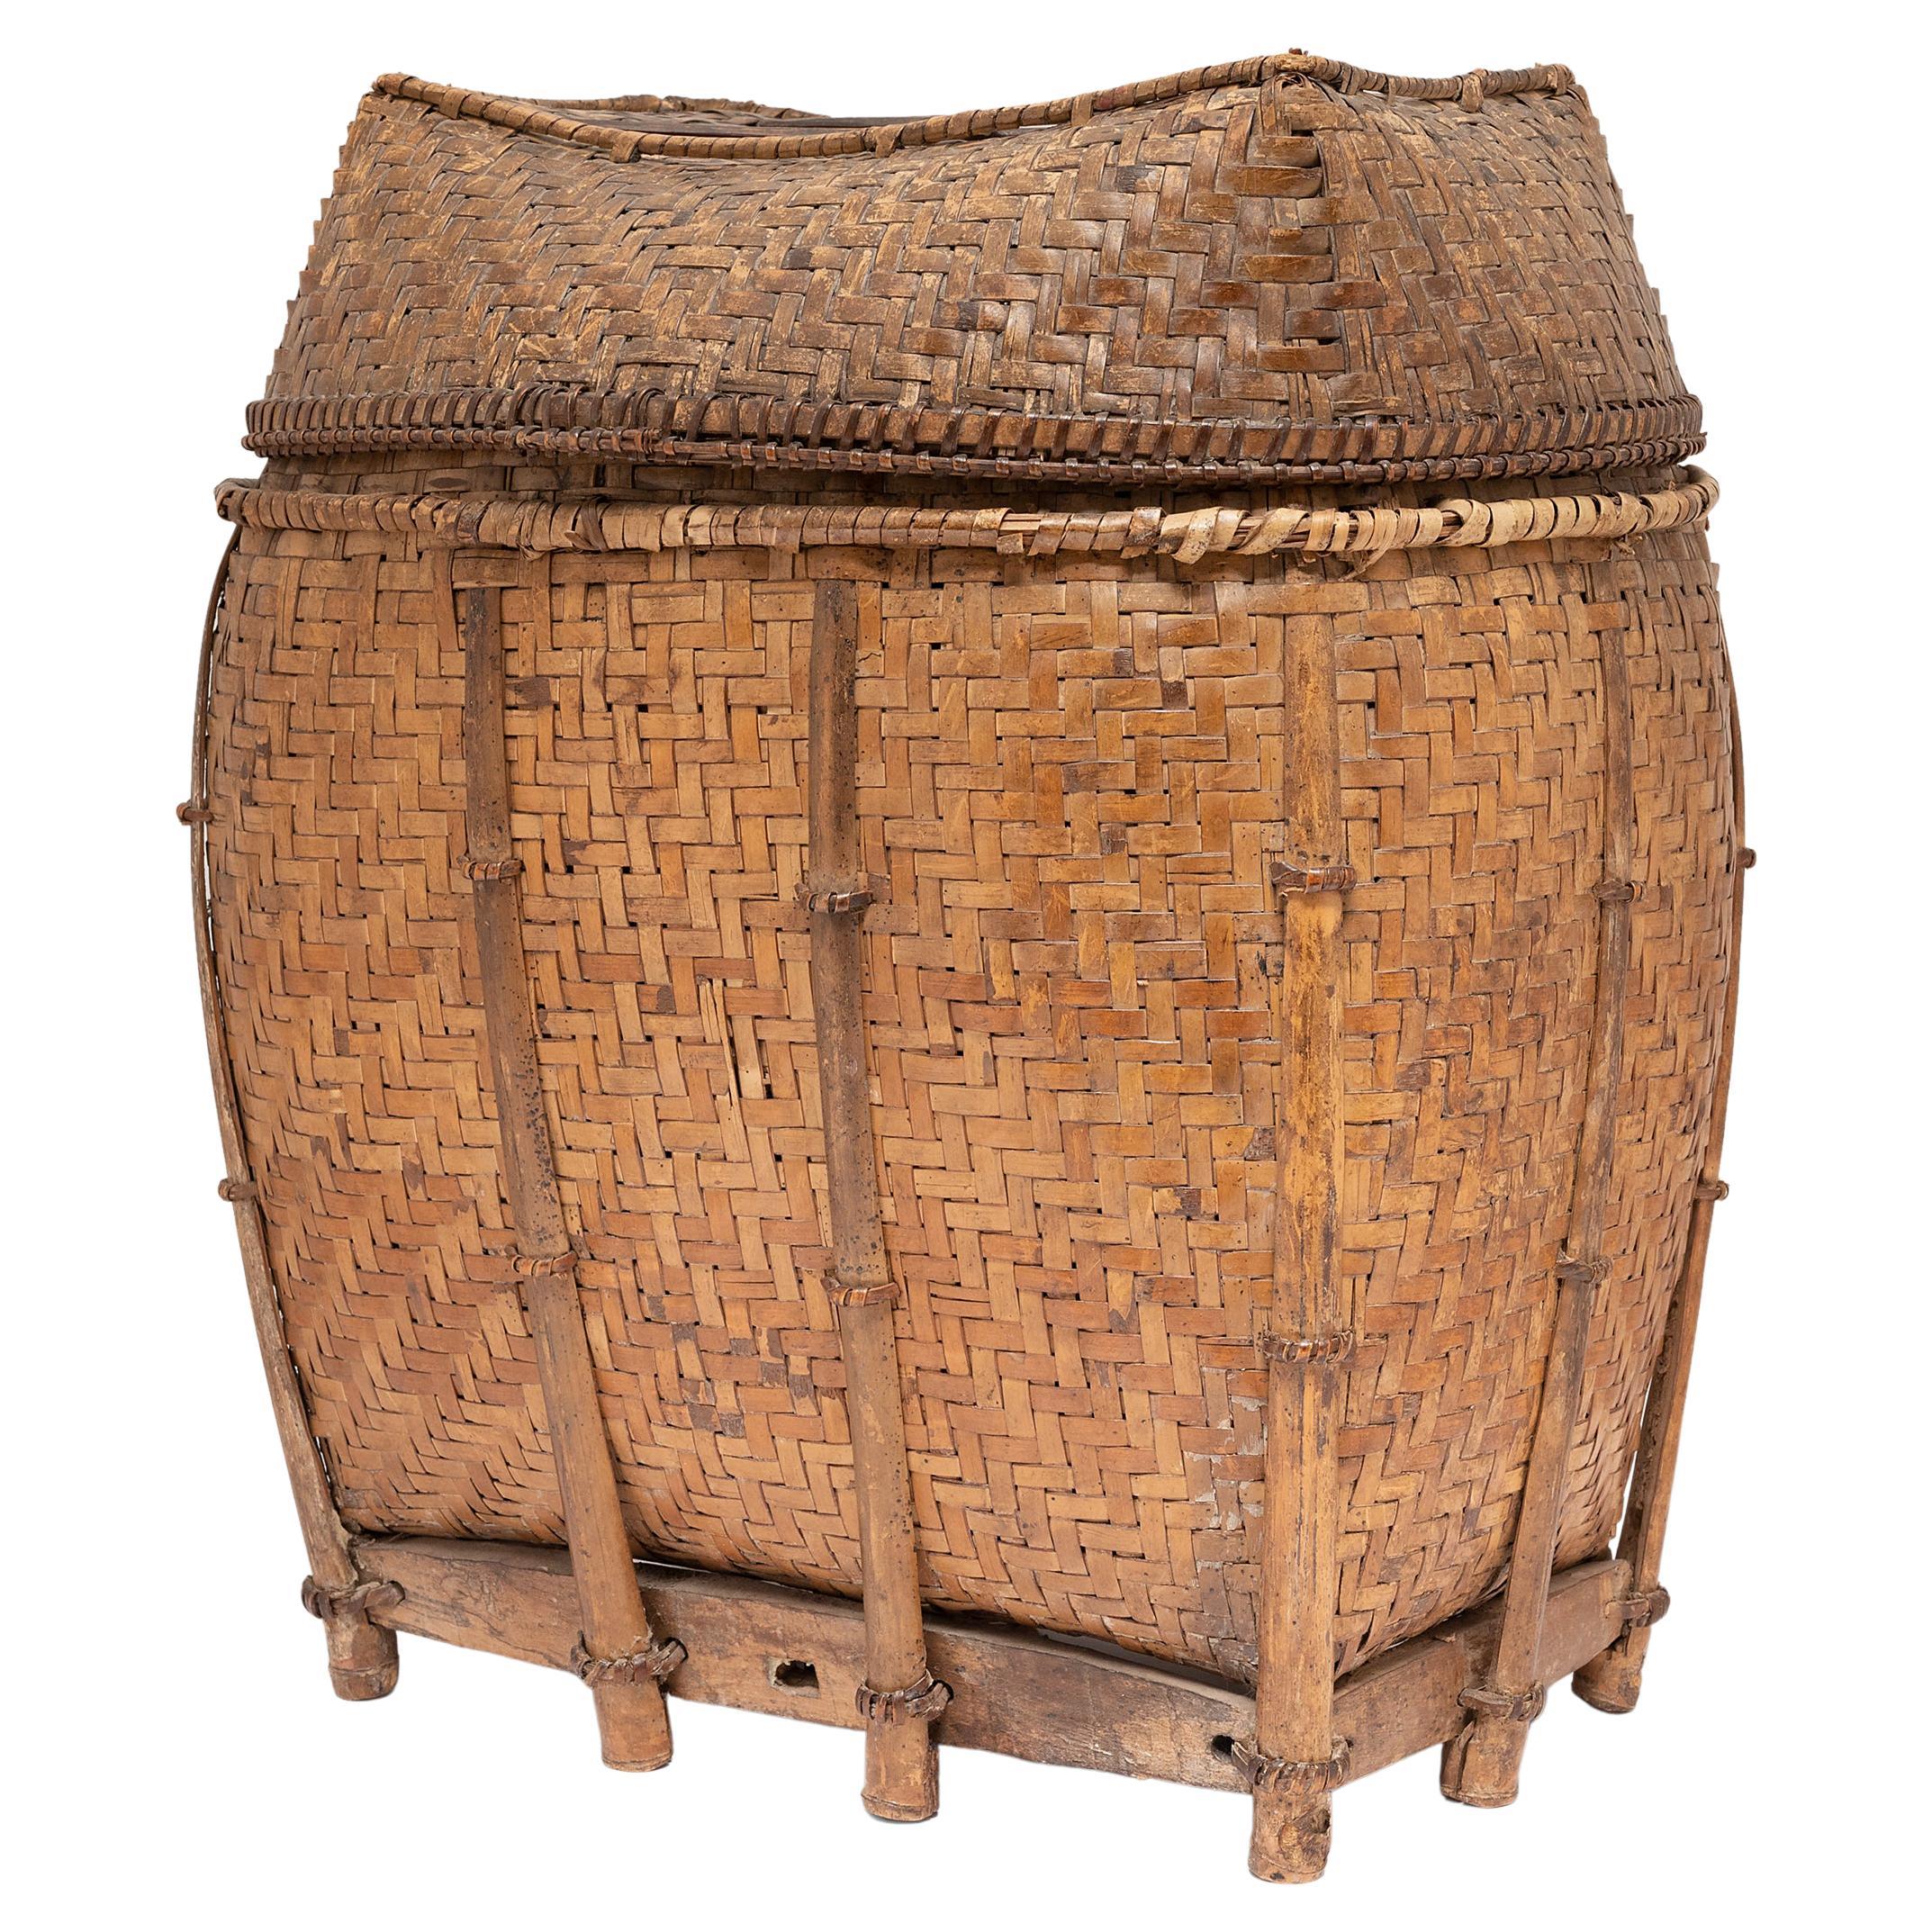 Filipino Woven Bamboo Pack Basket